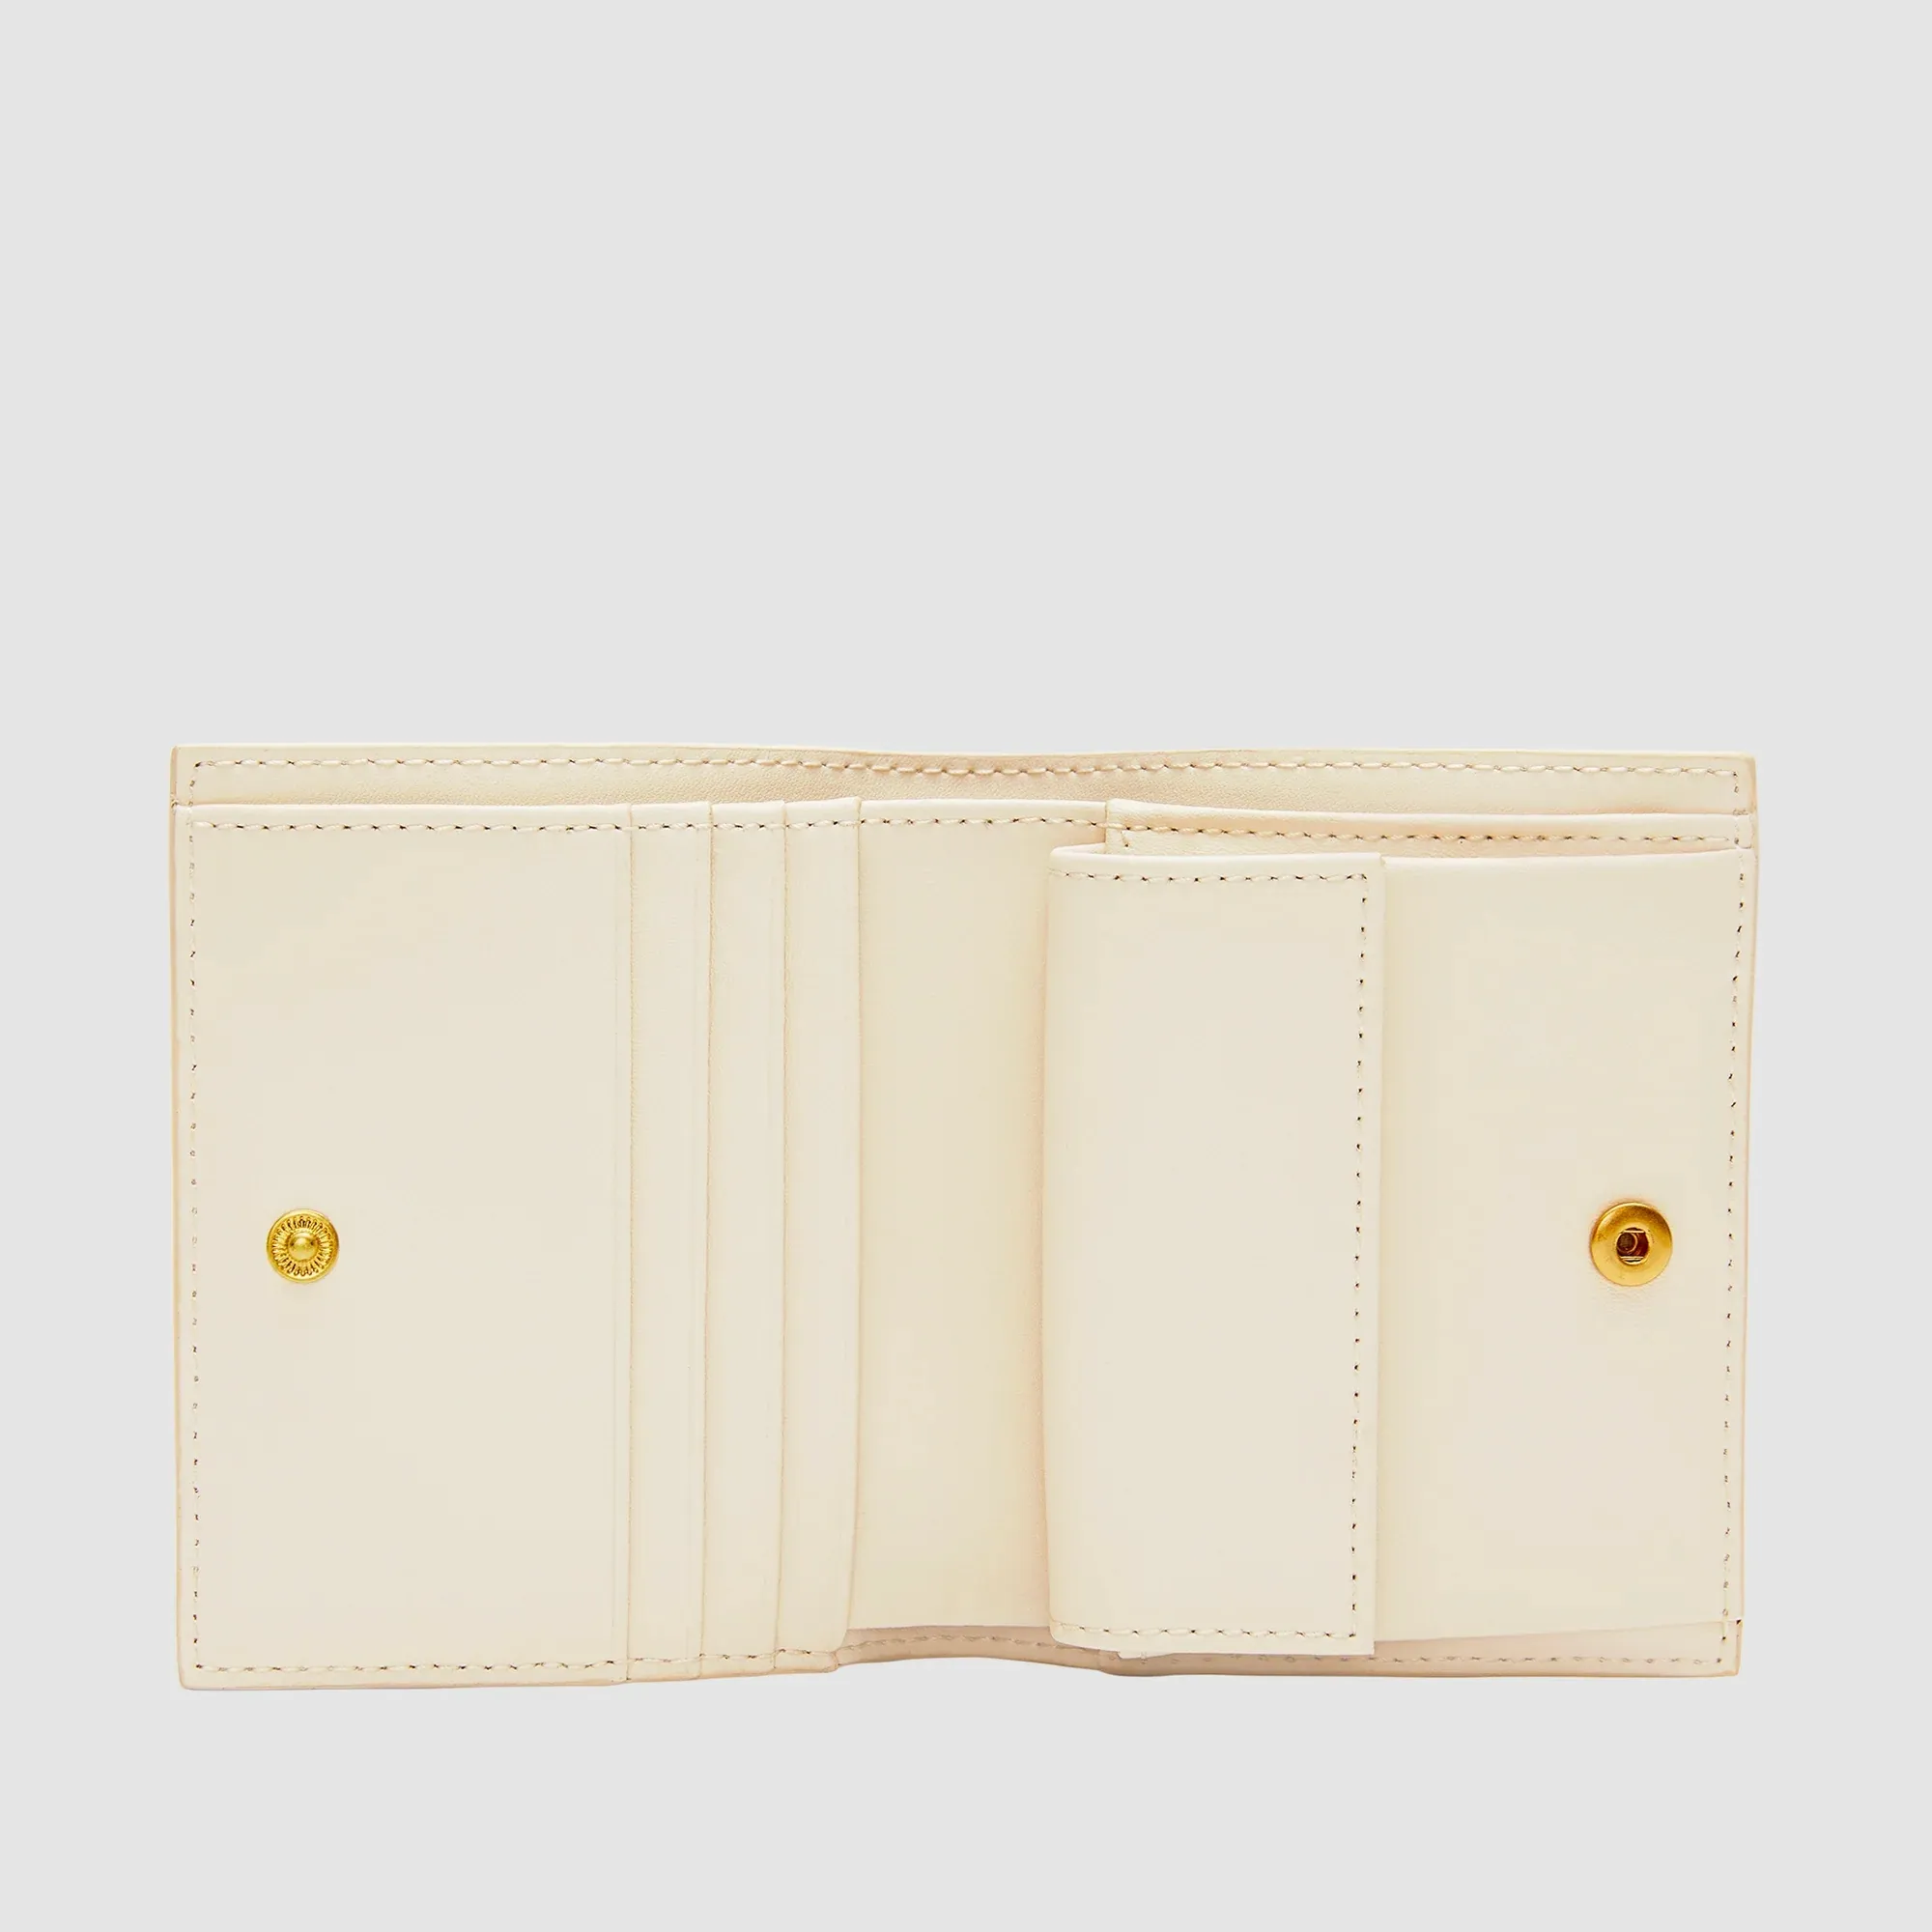 Toptan akıllı deri cüzdan lady bej kart cüzdan özel logo çift kat yapış cüzdan